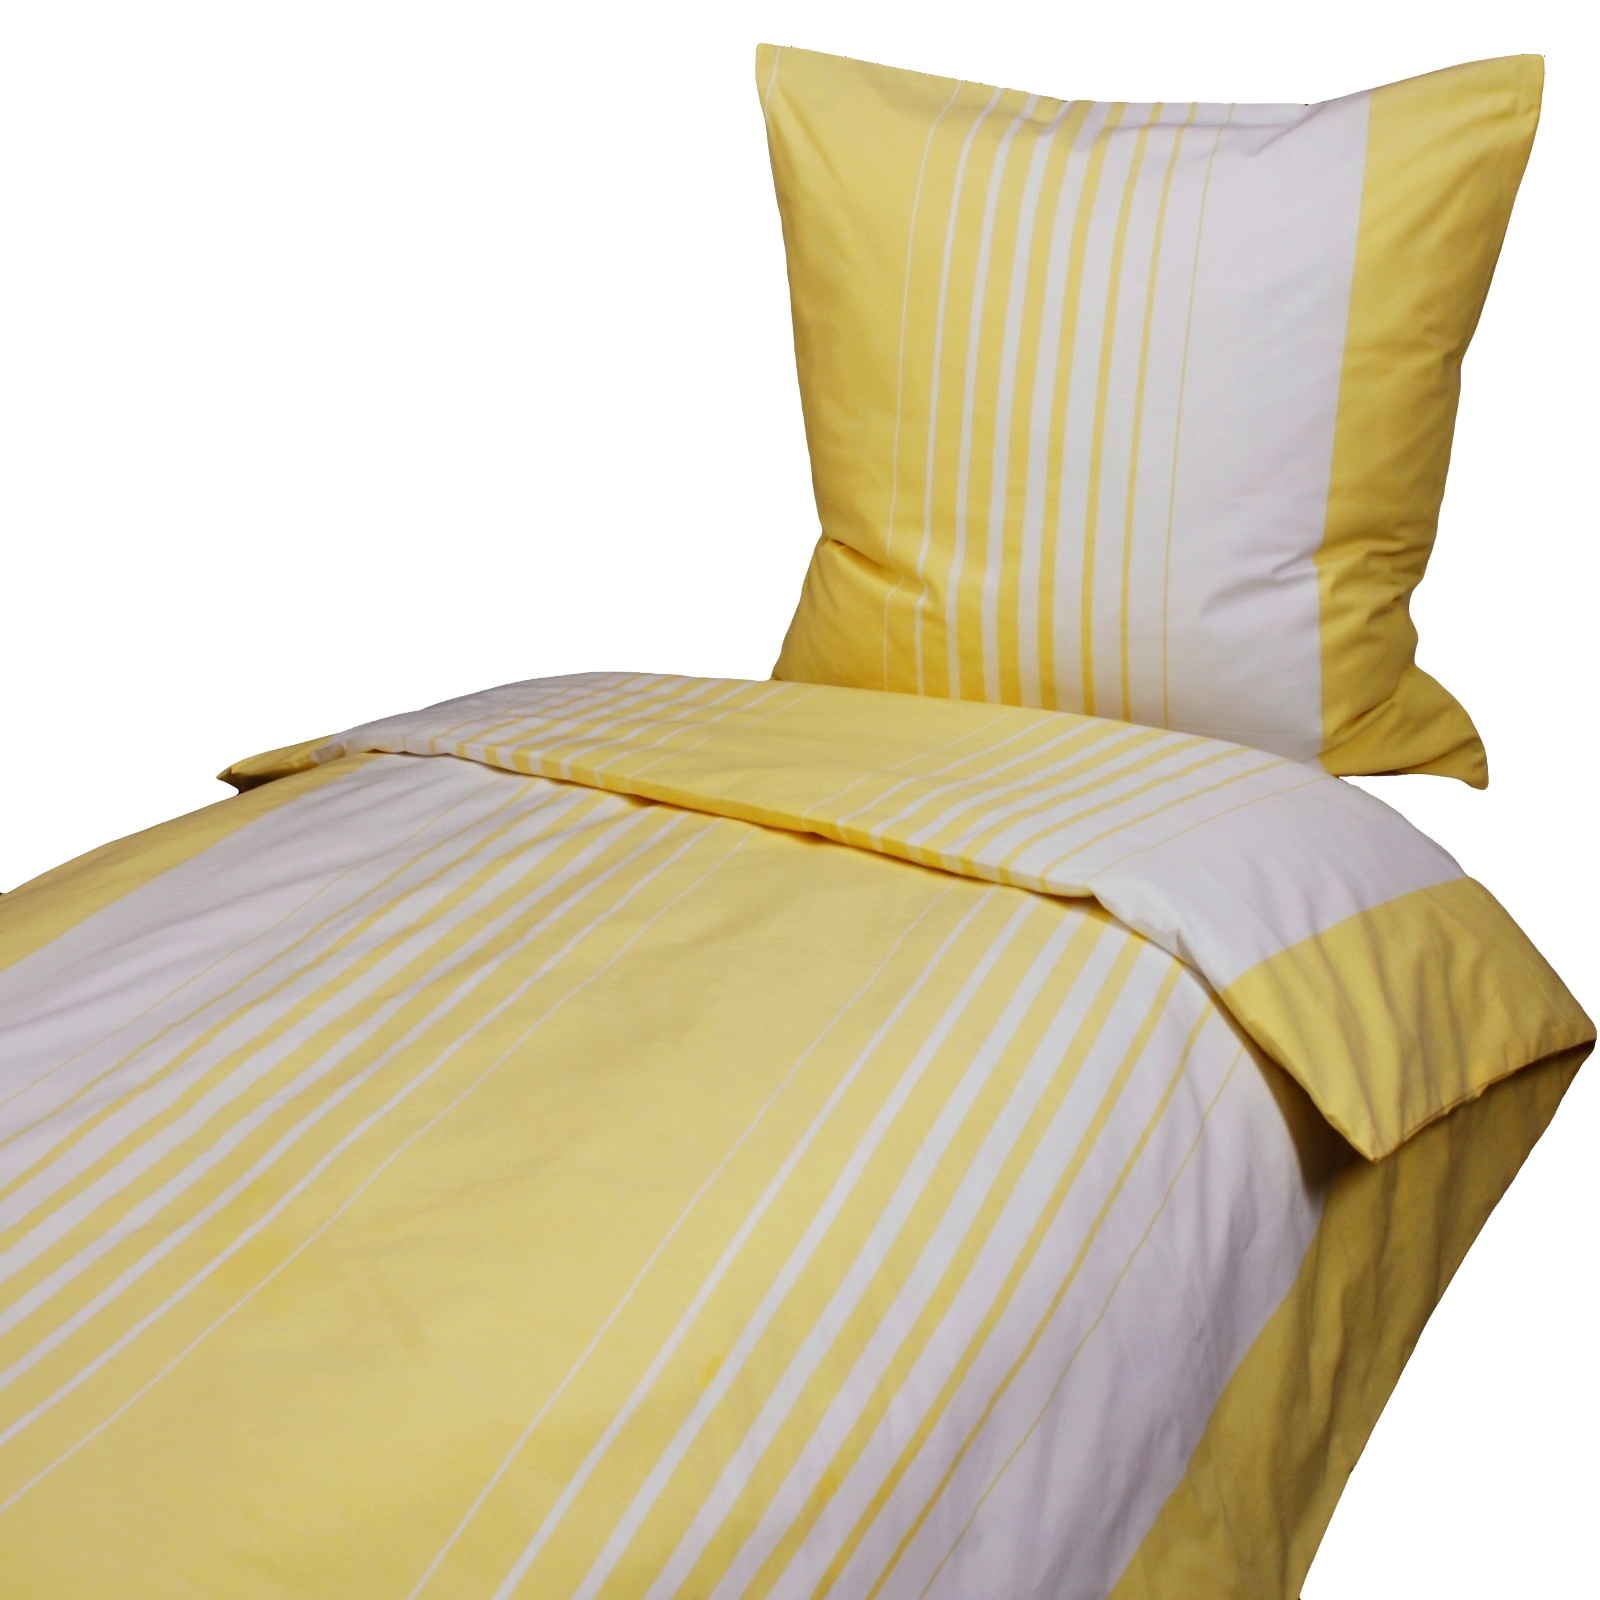 Bettbezug 135x200 cm Verlaufstreifen Gelb